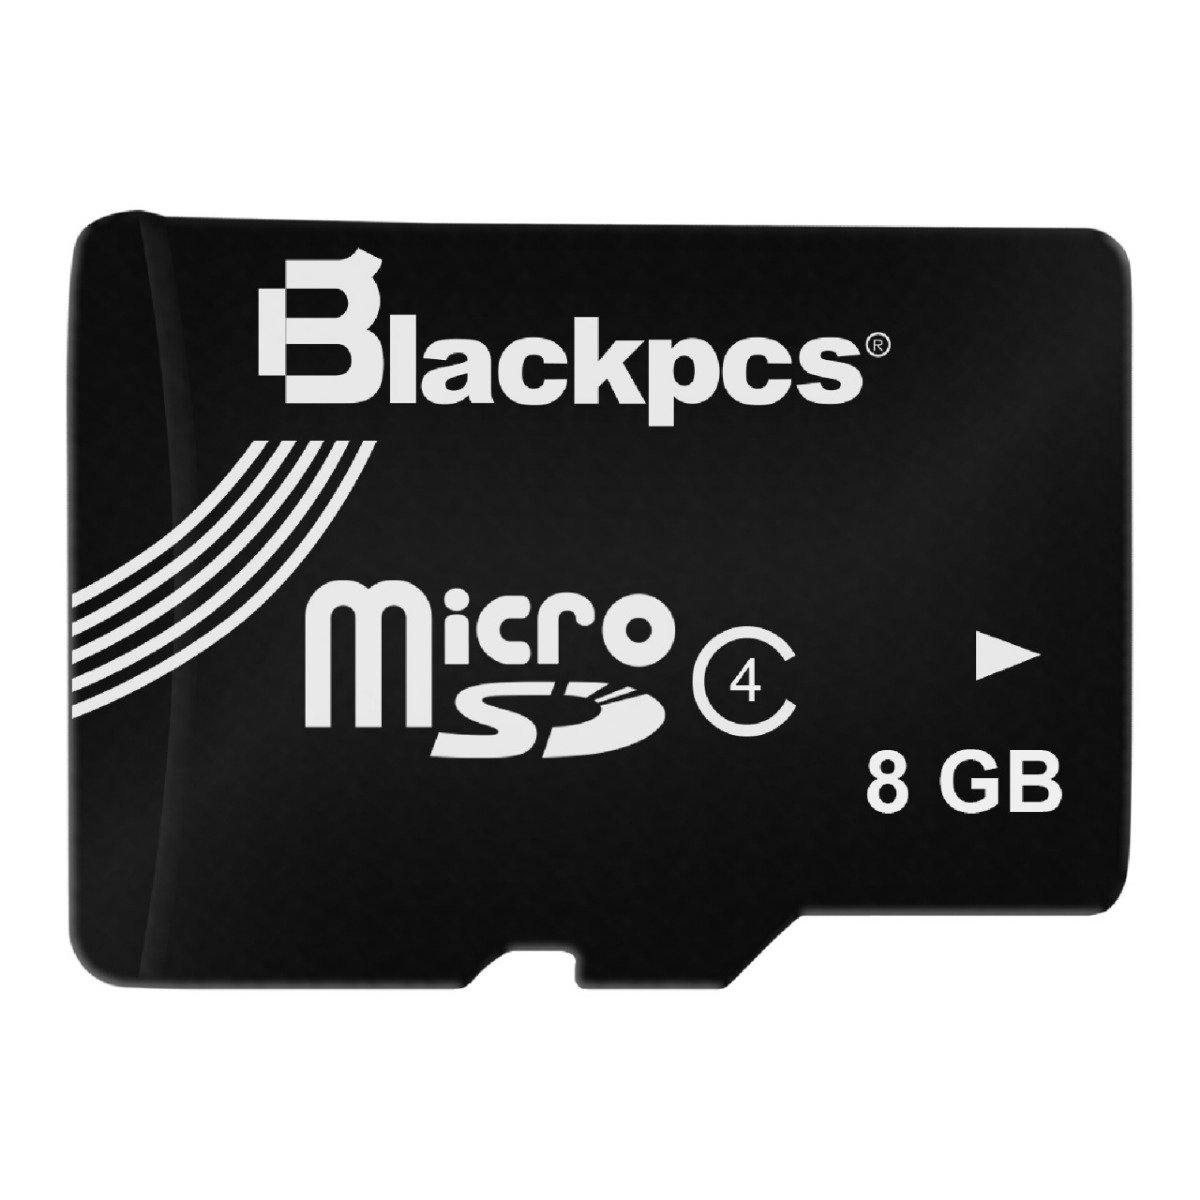 MEMORIA MICRO SD BLACKPCS CL4 8GB C/ADAPTADOR (MM4101A-8) - MM4101A-8